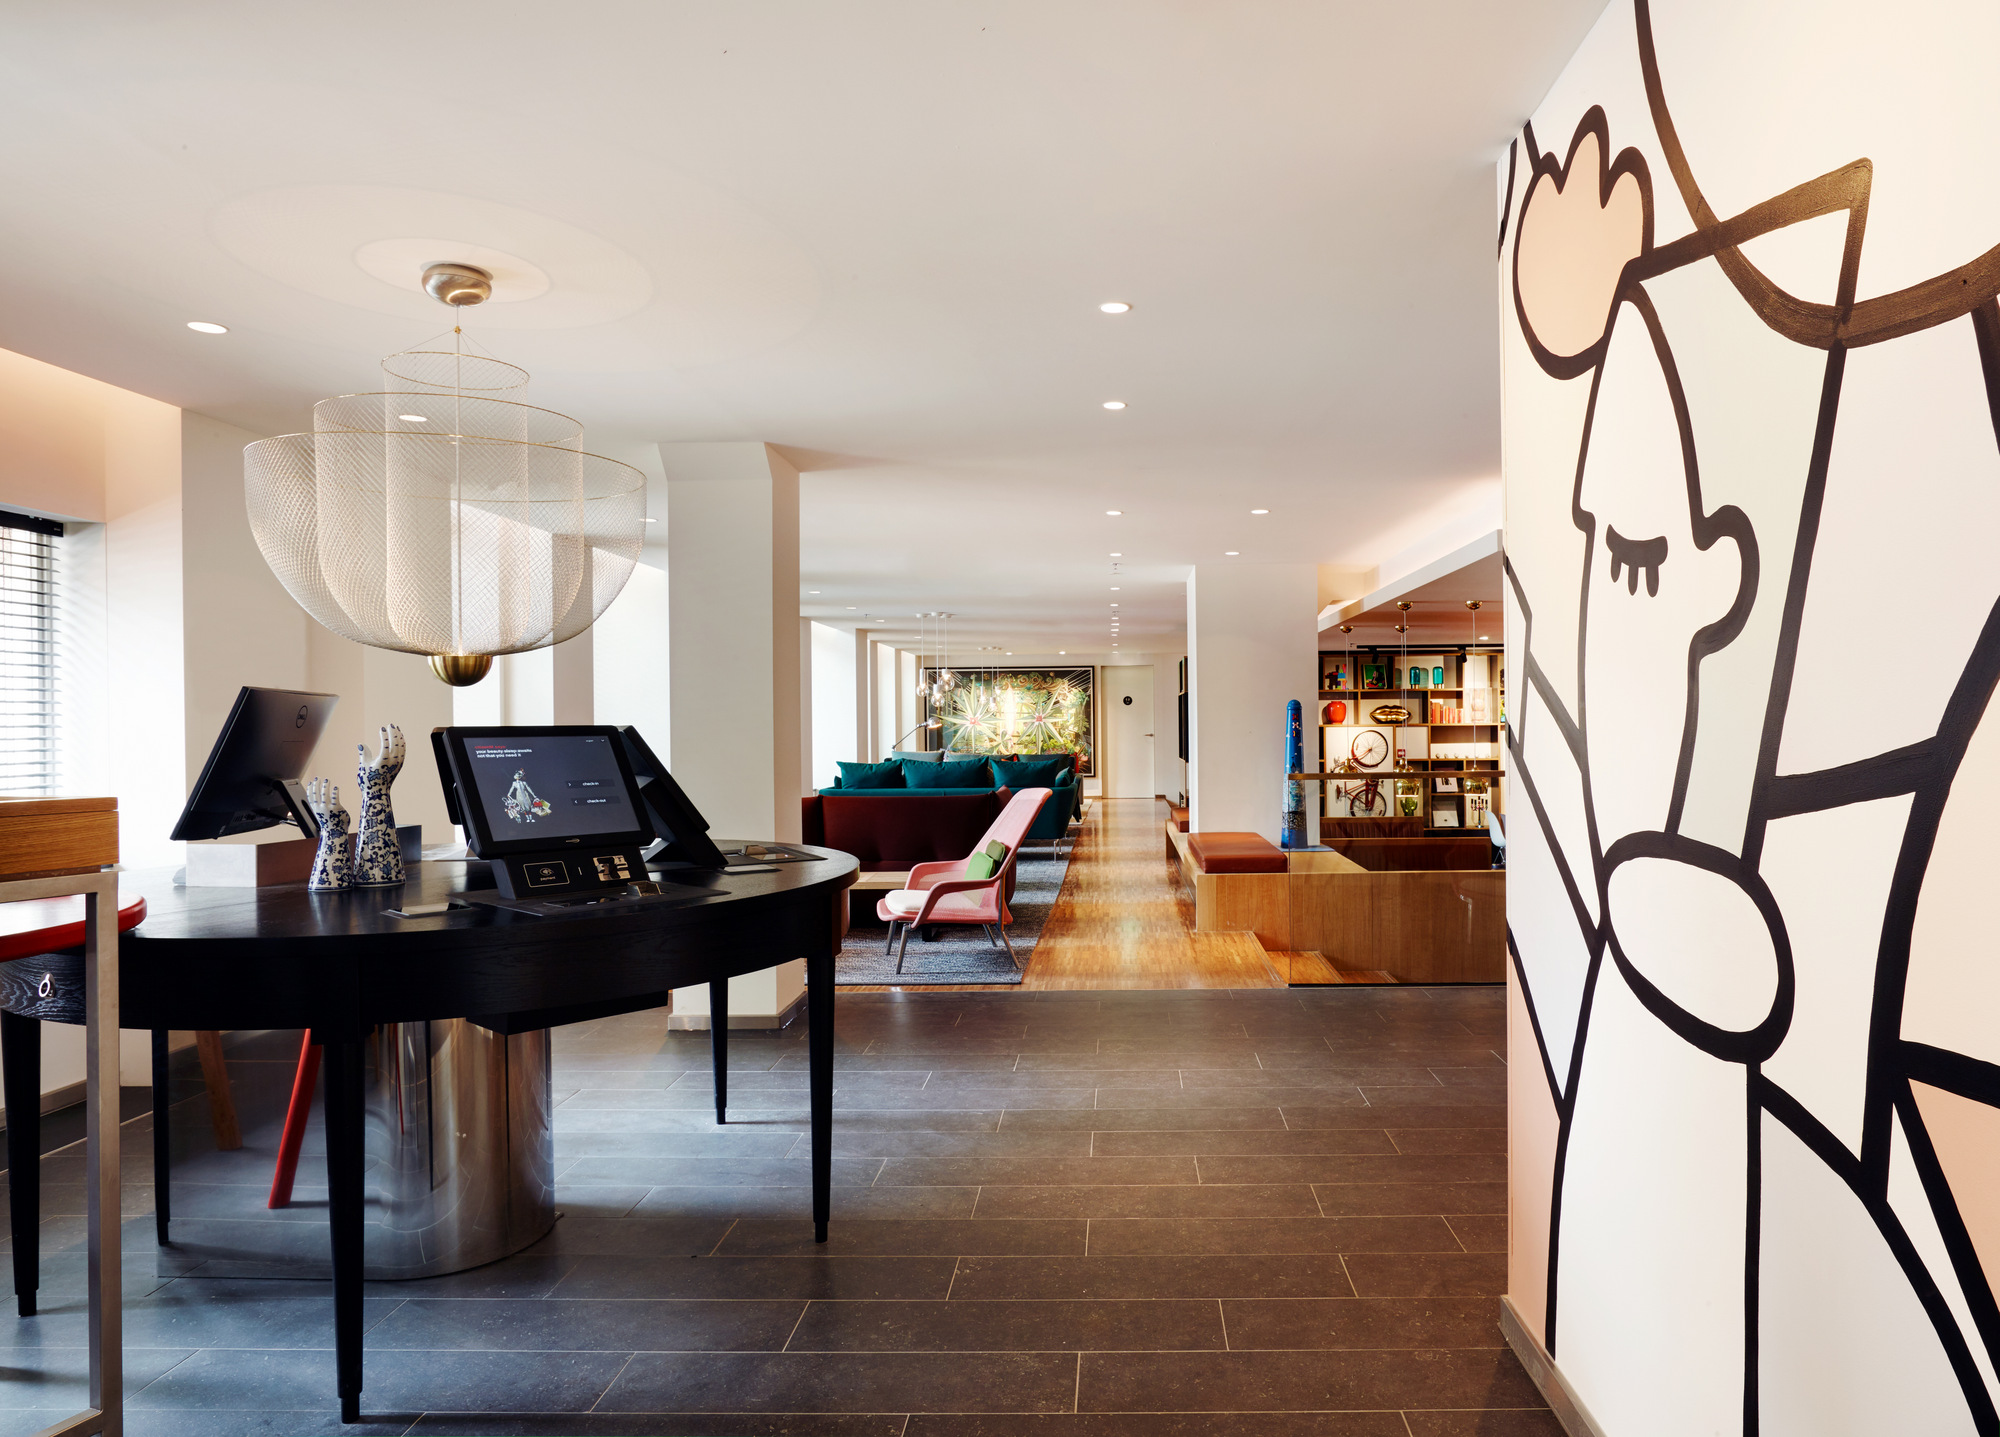 图片[4]|citizenM Amstel酒店|ART-Arrakis | 建筑室内设计的创新与灵感